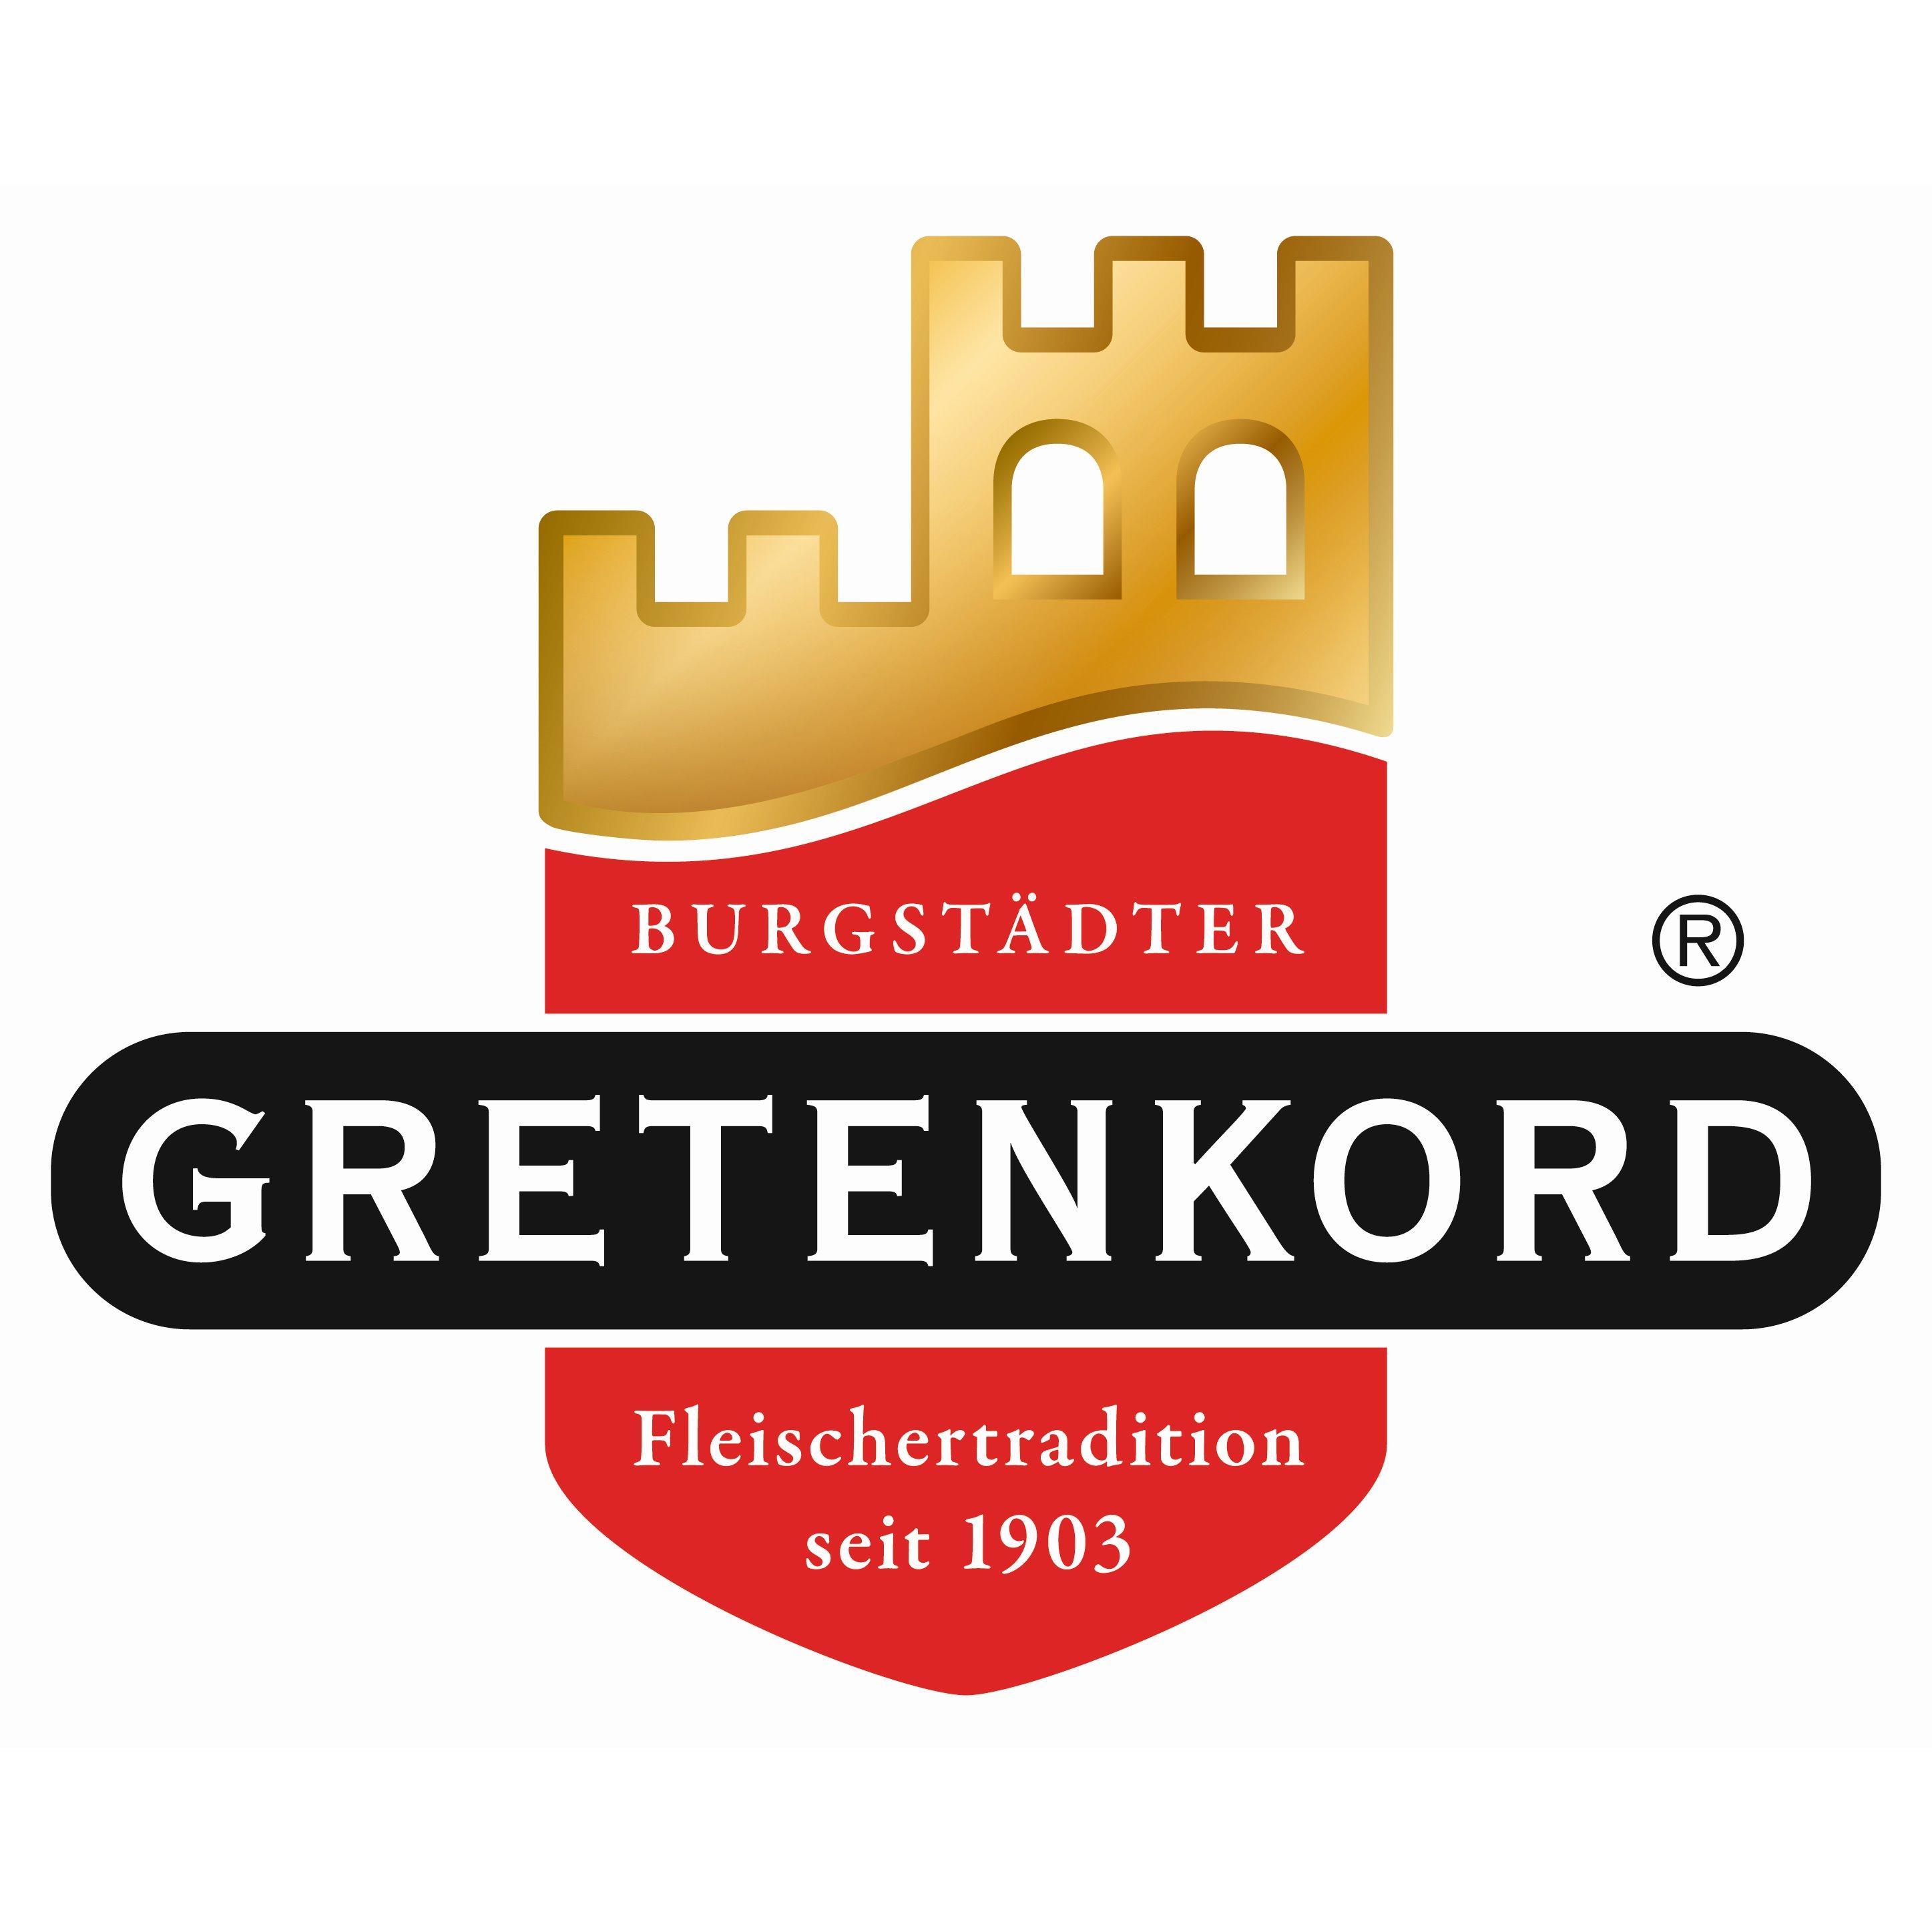 Fleischerei Gretenkord in Altenburg in Thüringen - Logo